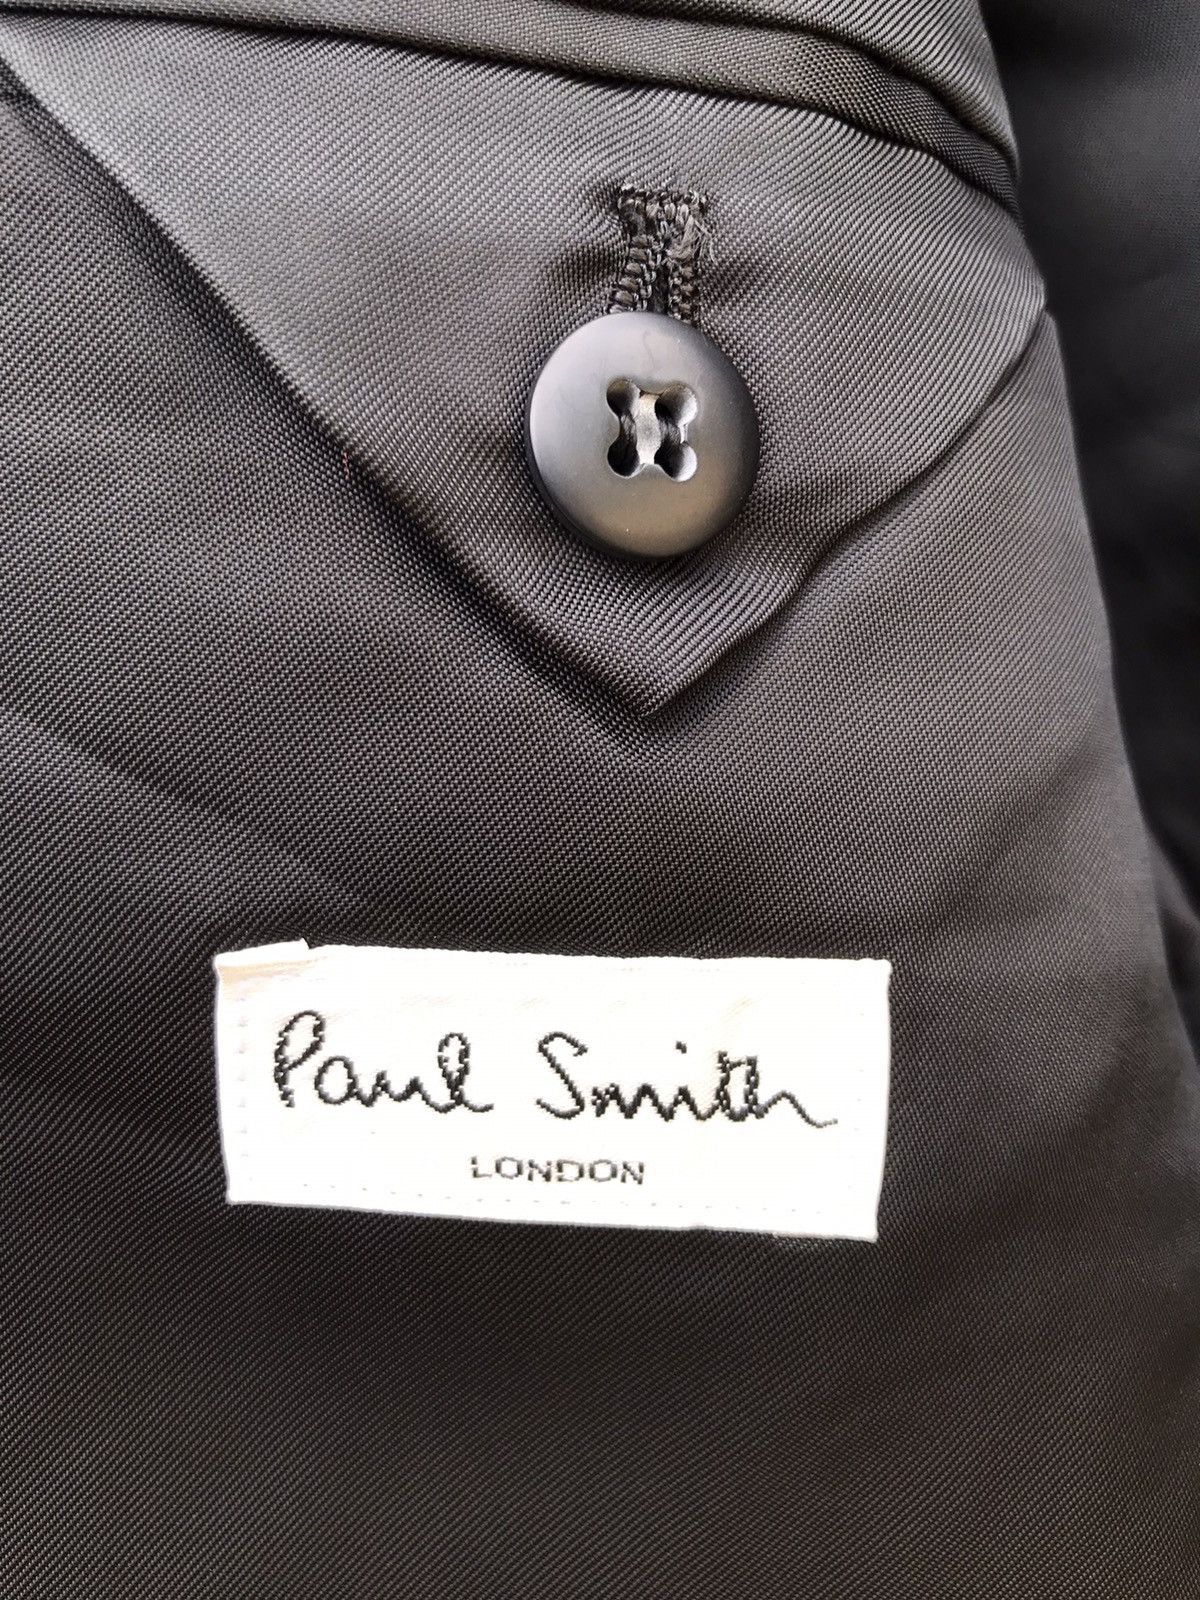 Paul smith Suit Jacket - 3